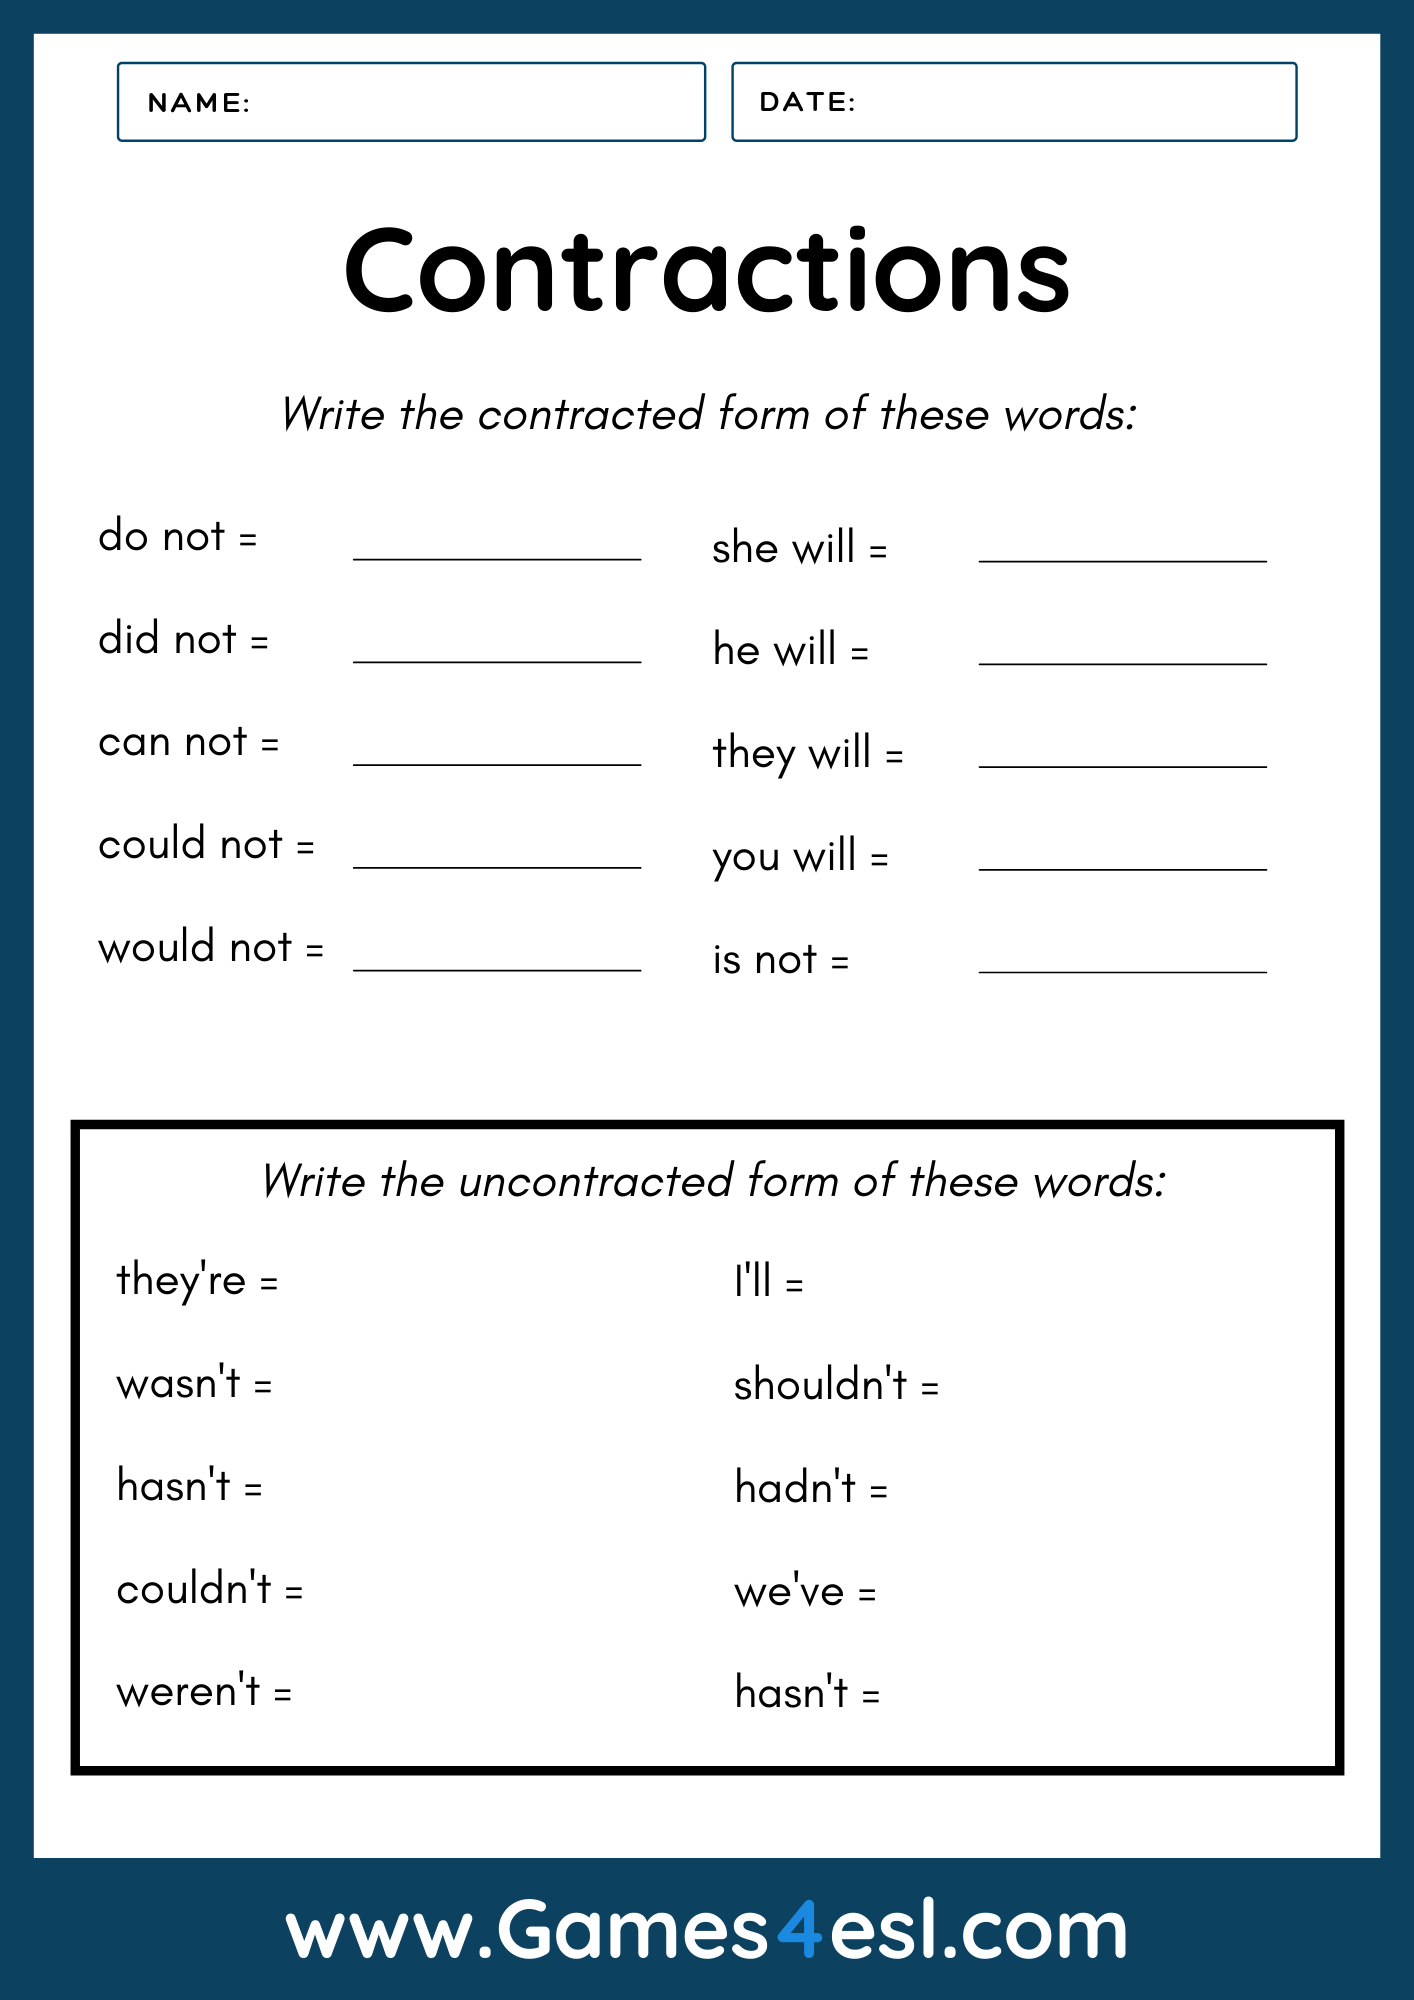 Contraction Worksheet